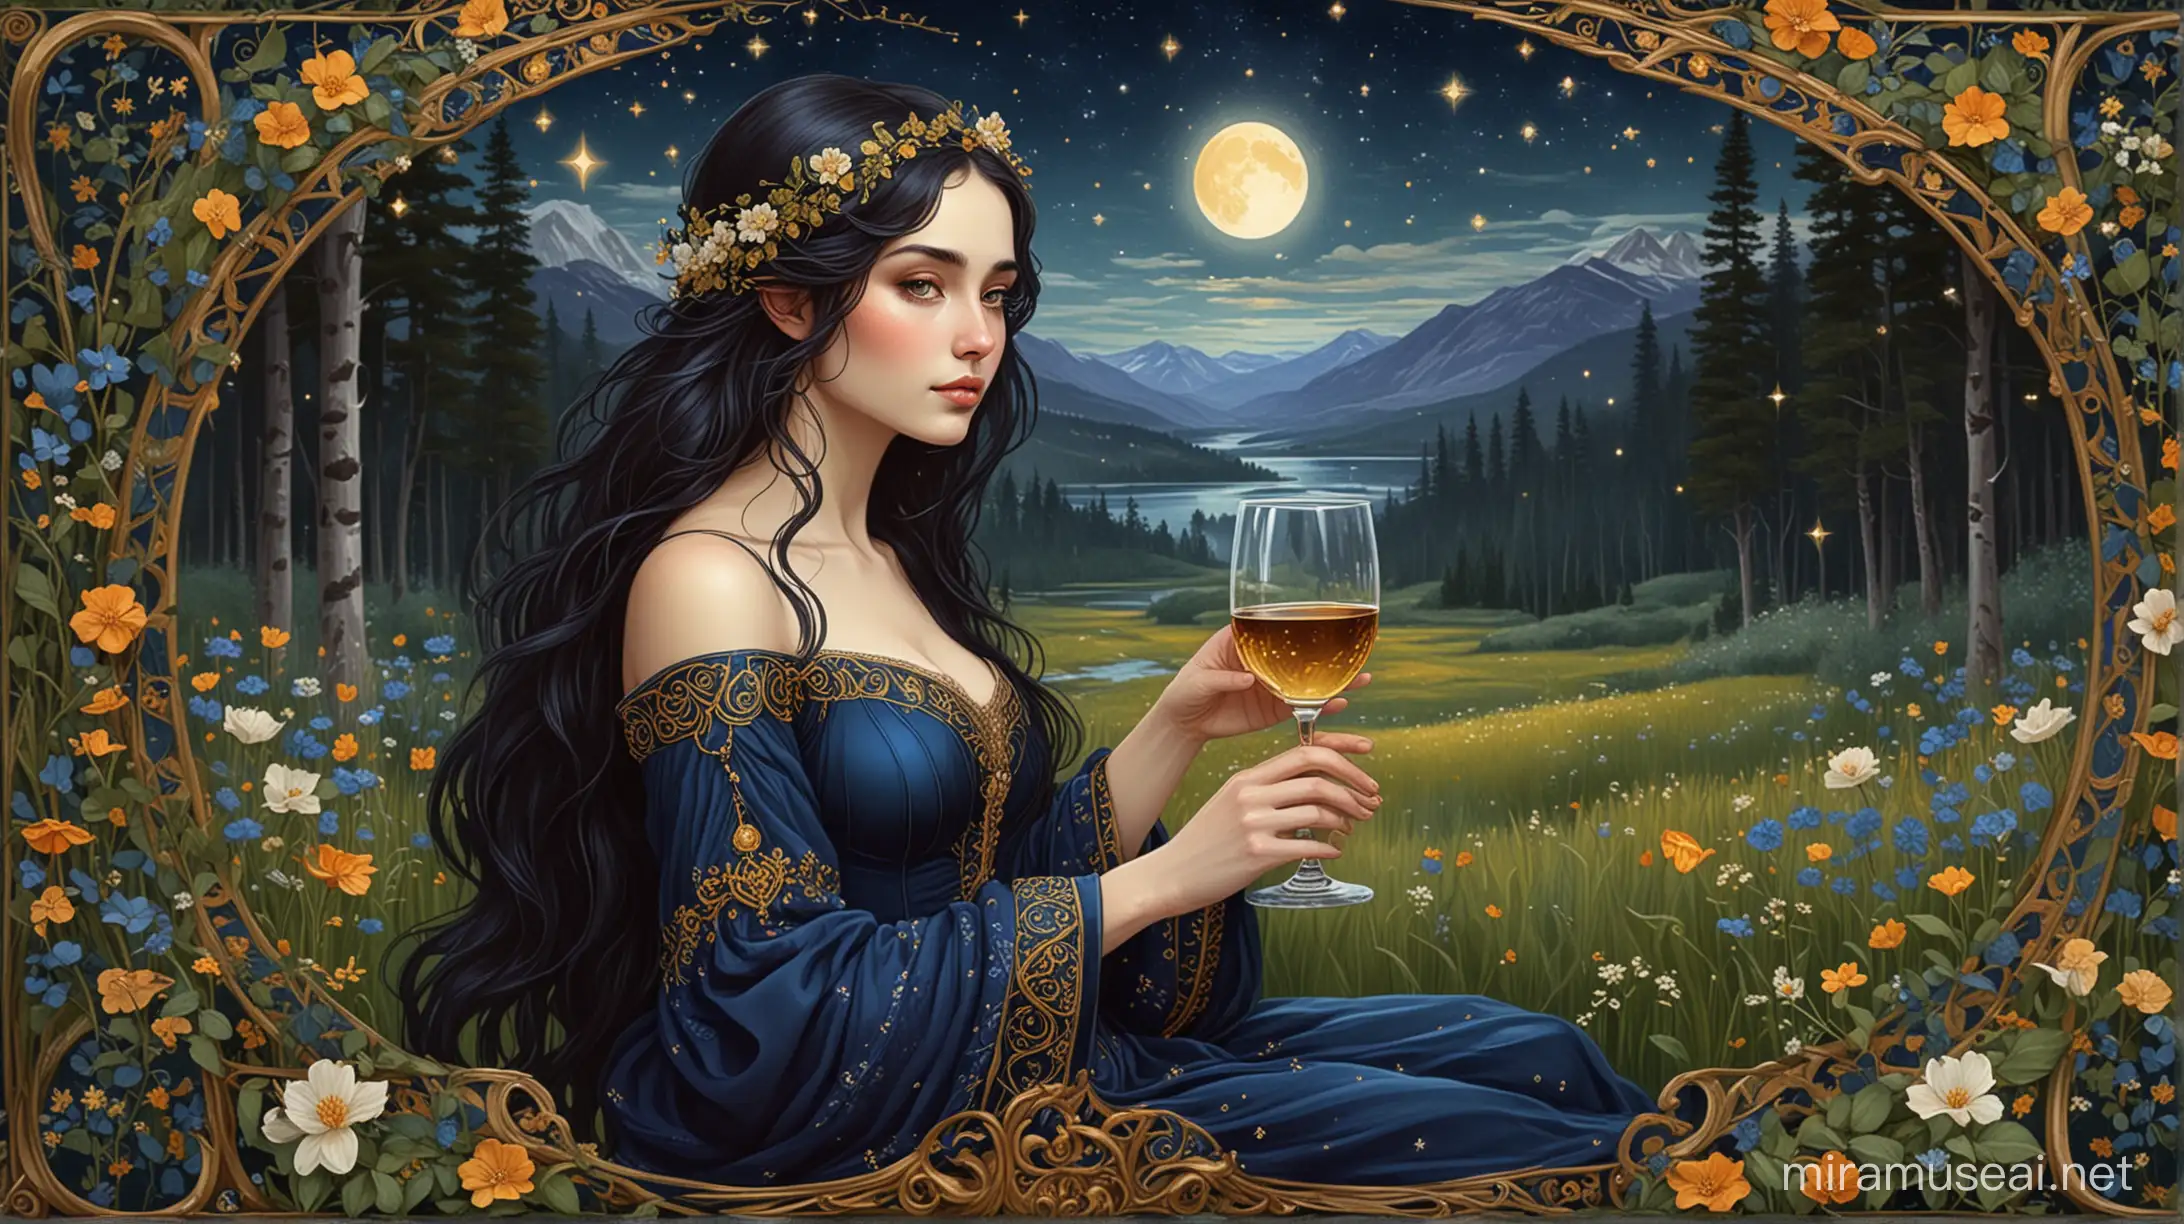 Enchanting Elf Maiden Savoring Wine Amidst Moonlit Birch Grove